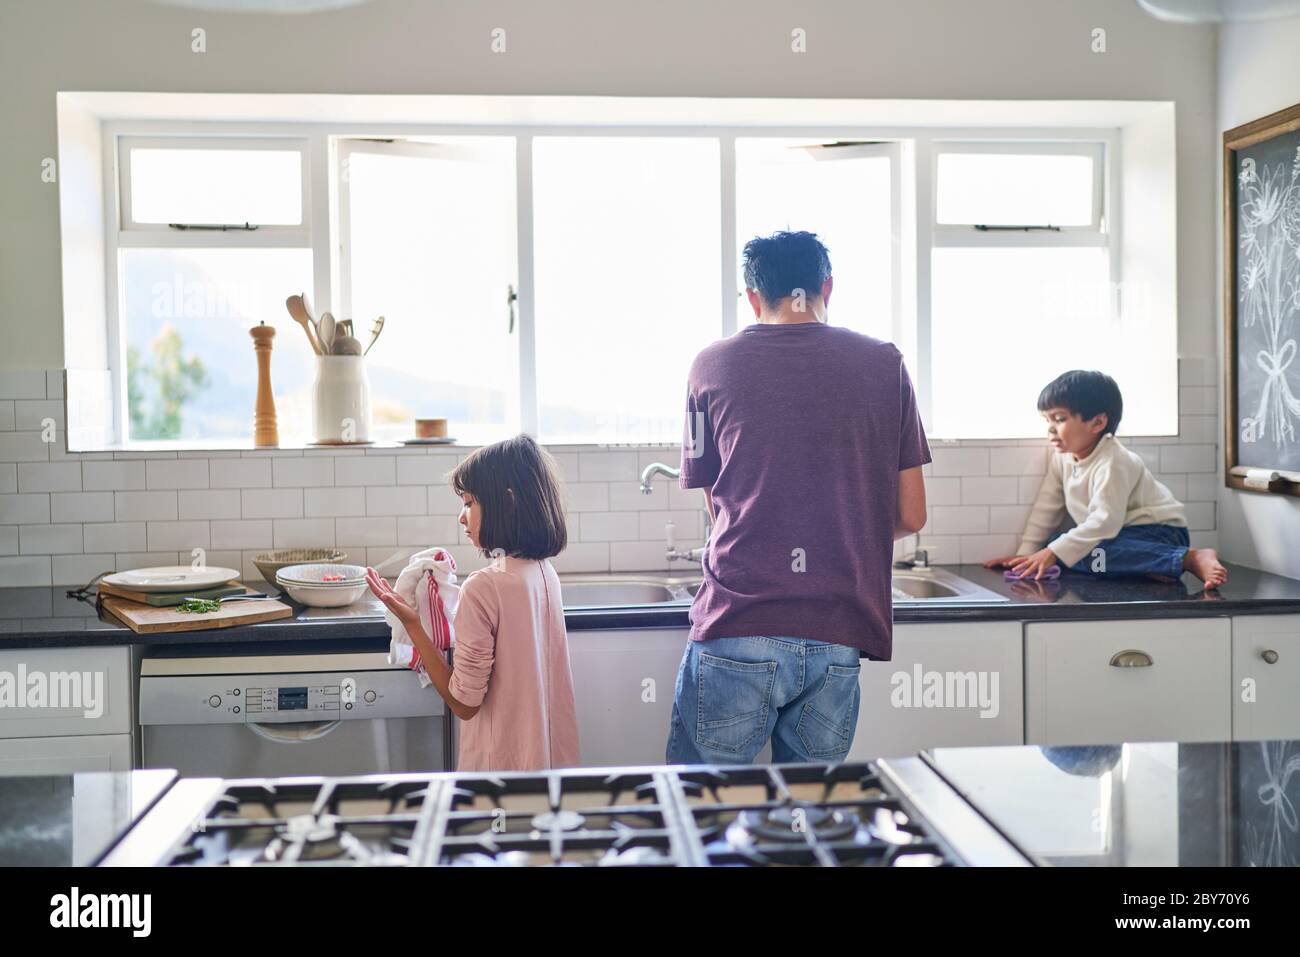 Familia haciendo platos en el fregadero de la cocina Foto de stock